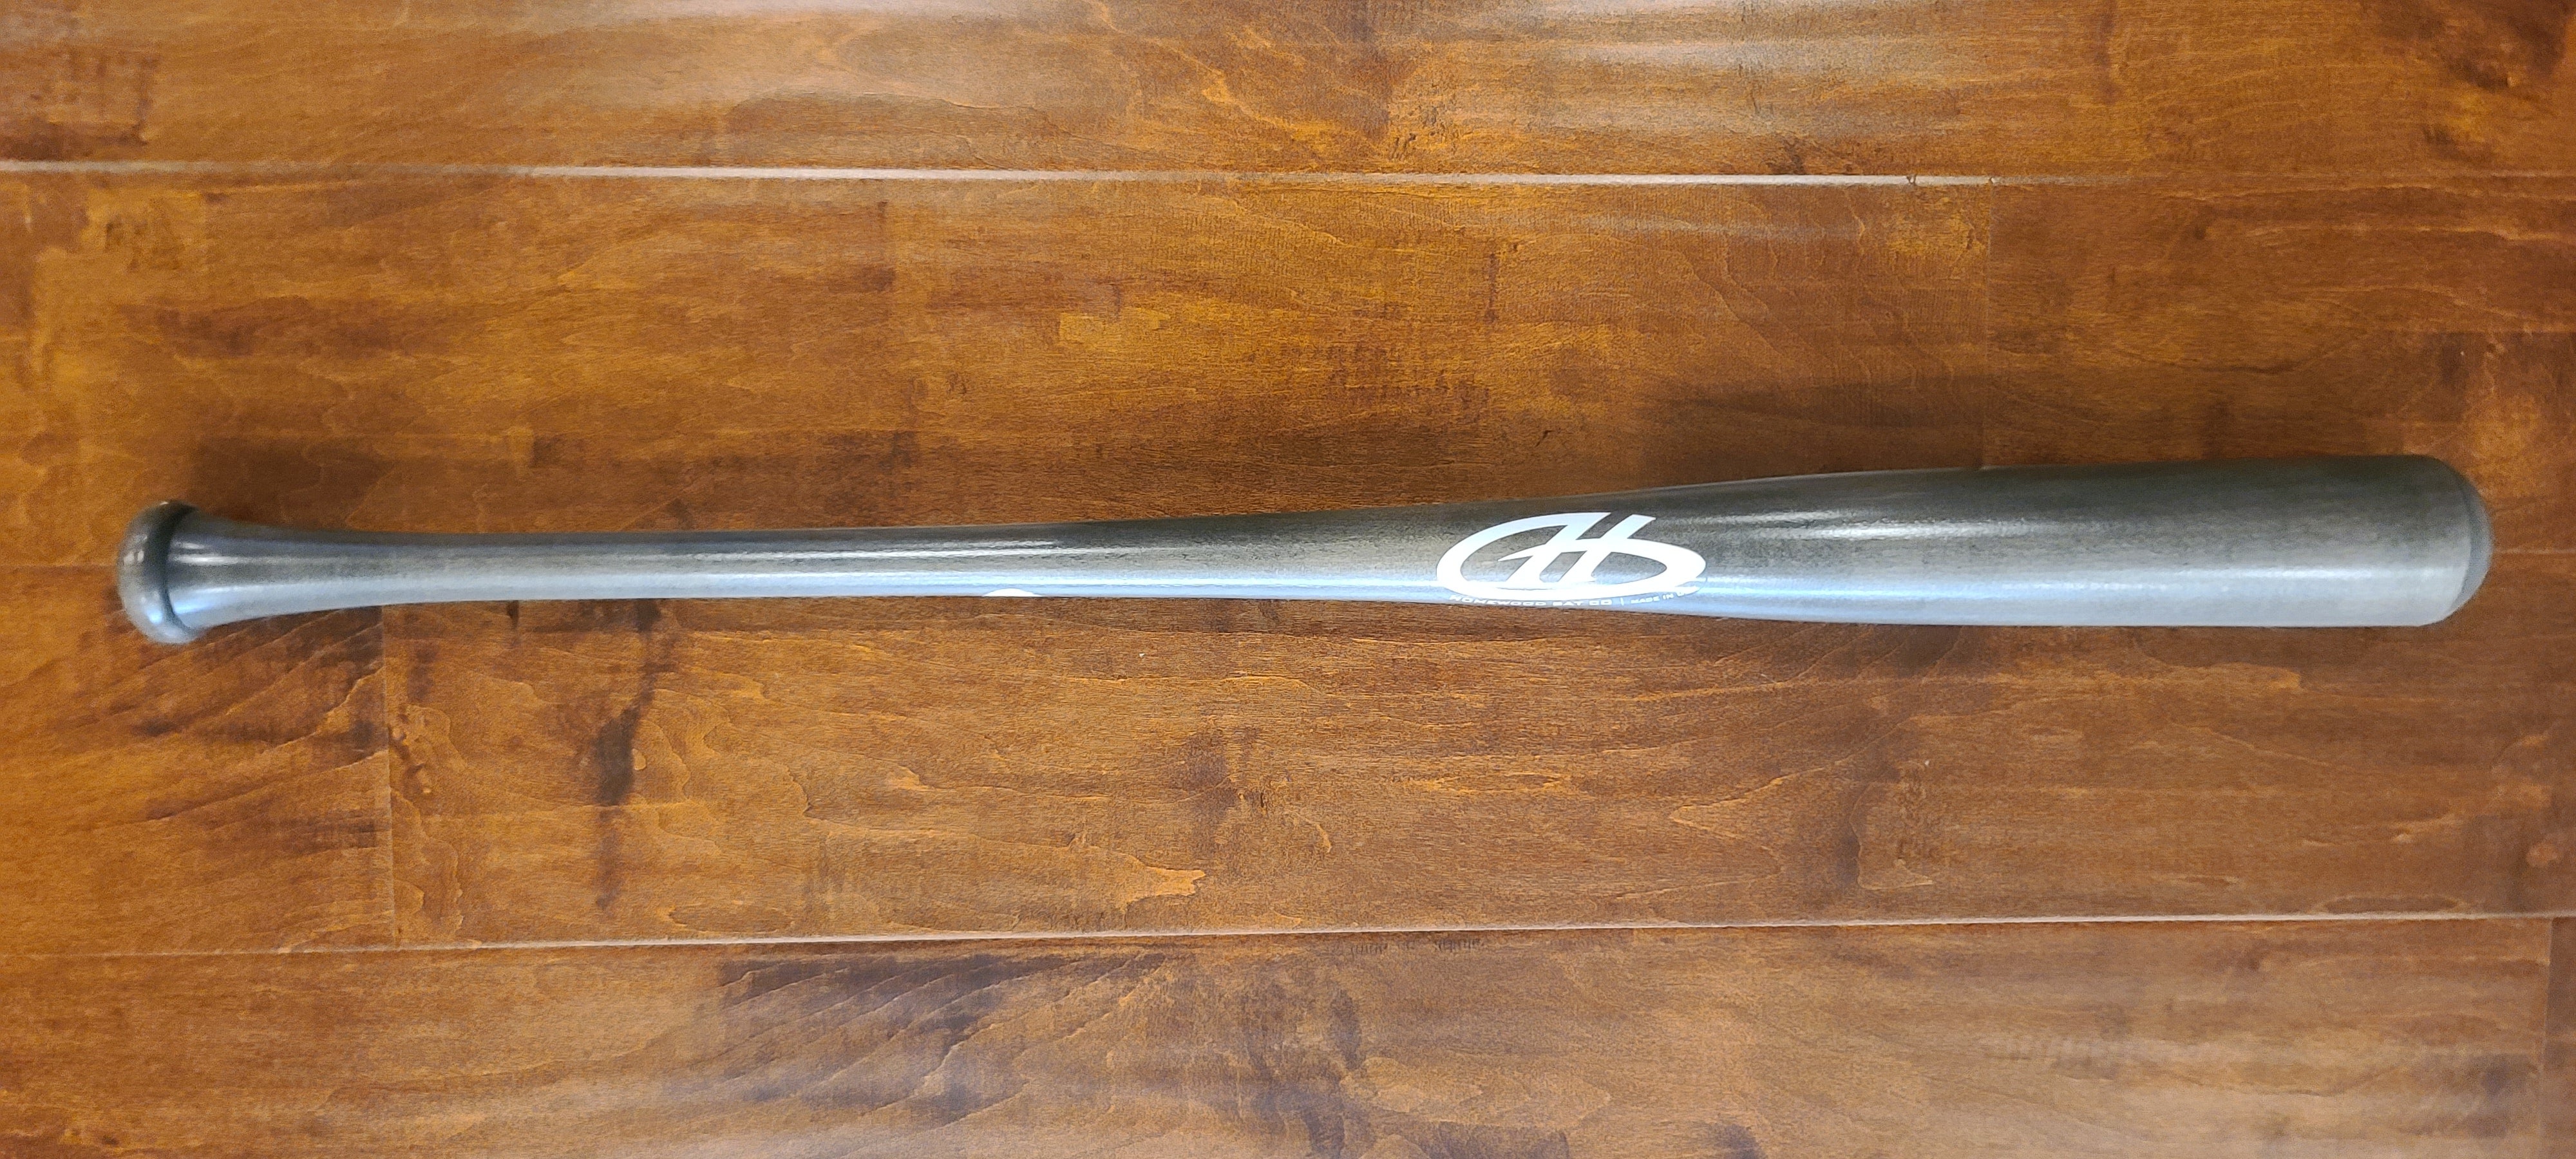 SAINT on X: 1 of 1 Supreme x Louis Vuitton Baseball Bat ⚾️   / X